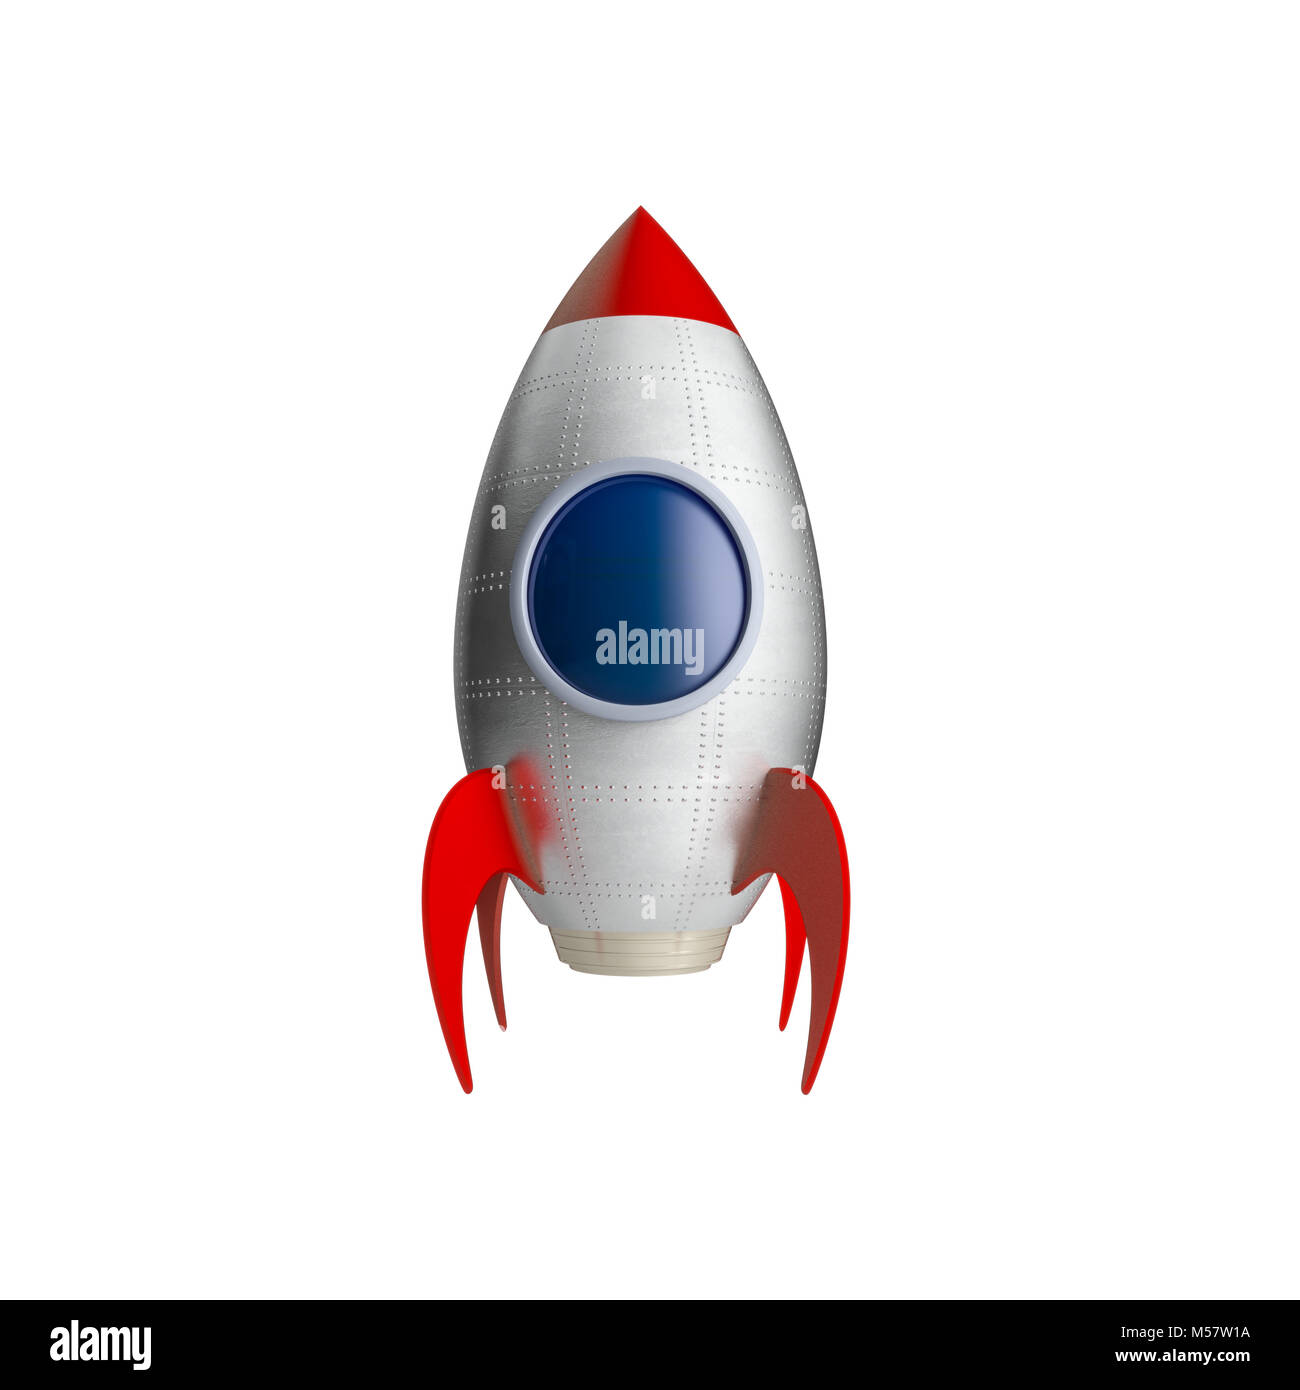 Klassisches Spielzeug Raumschiff auf weißem Hintergrund 3 isolierte d rendering Image Stockfoto